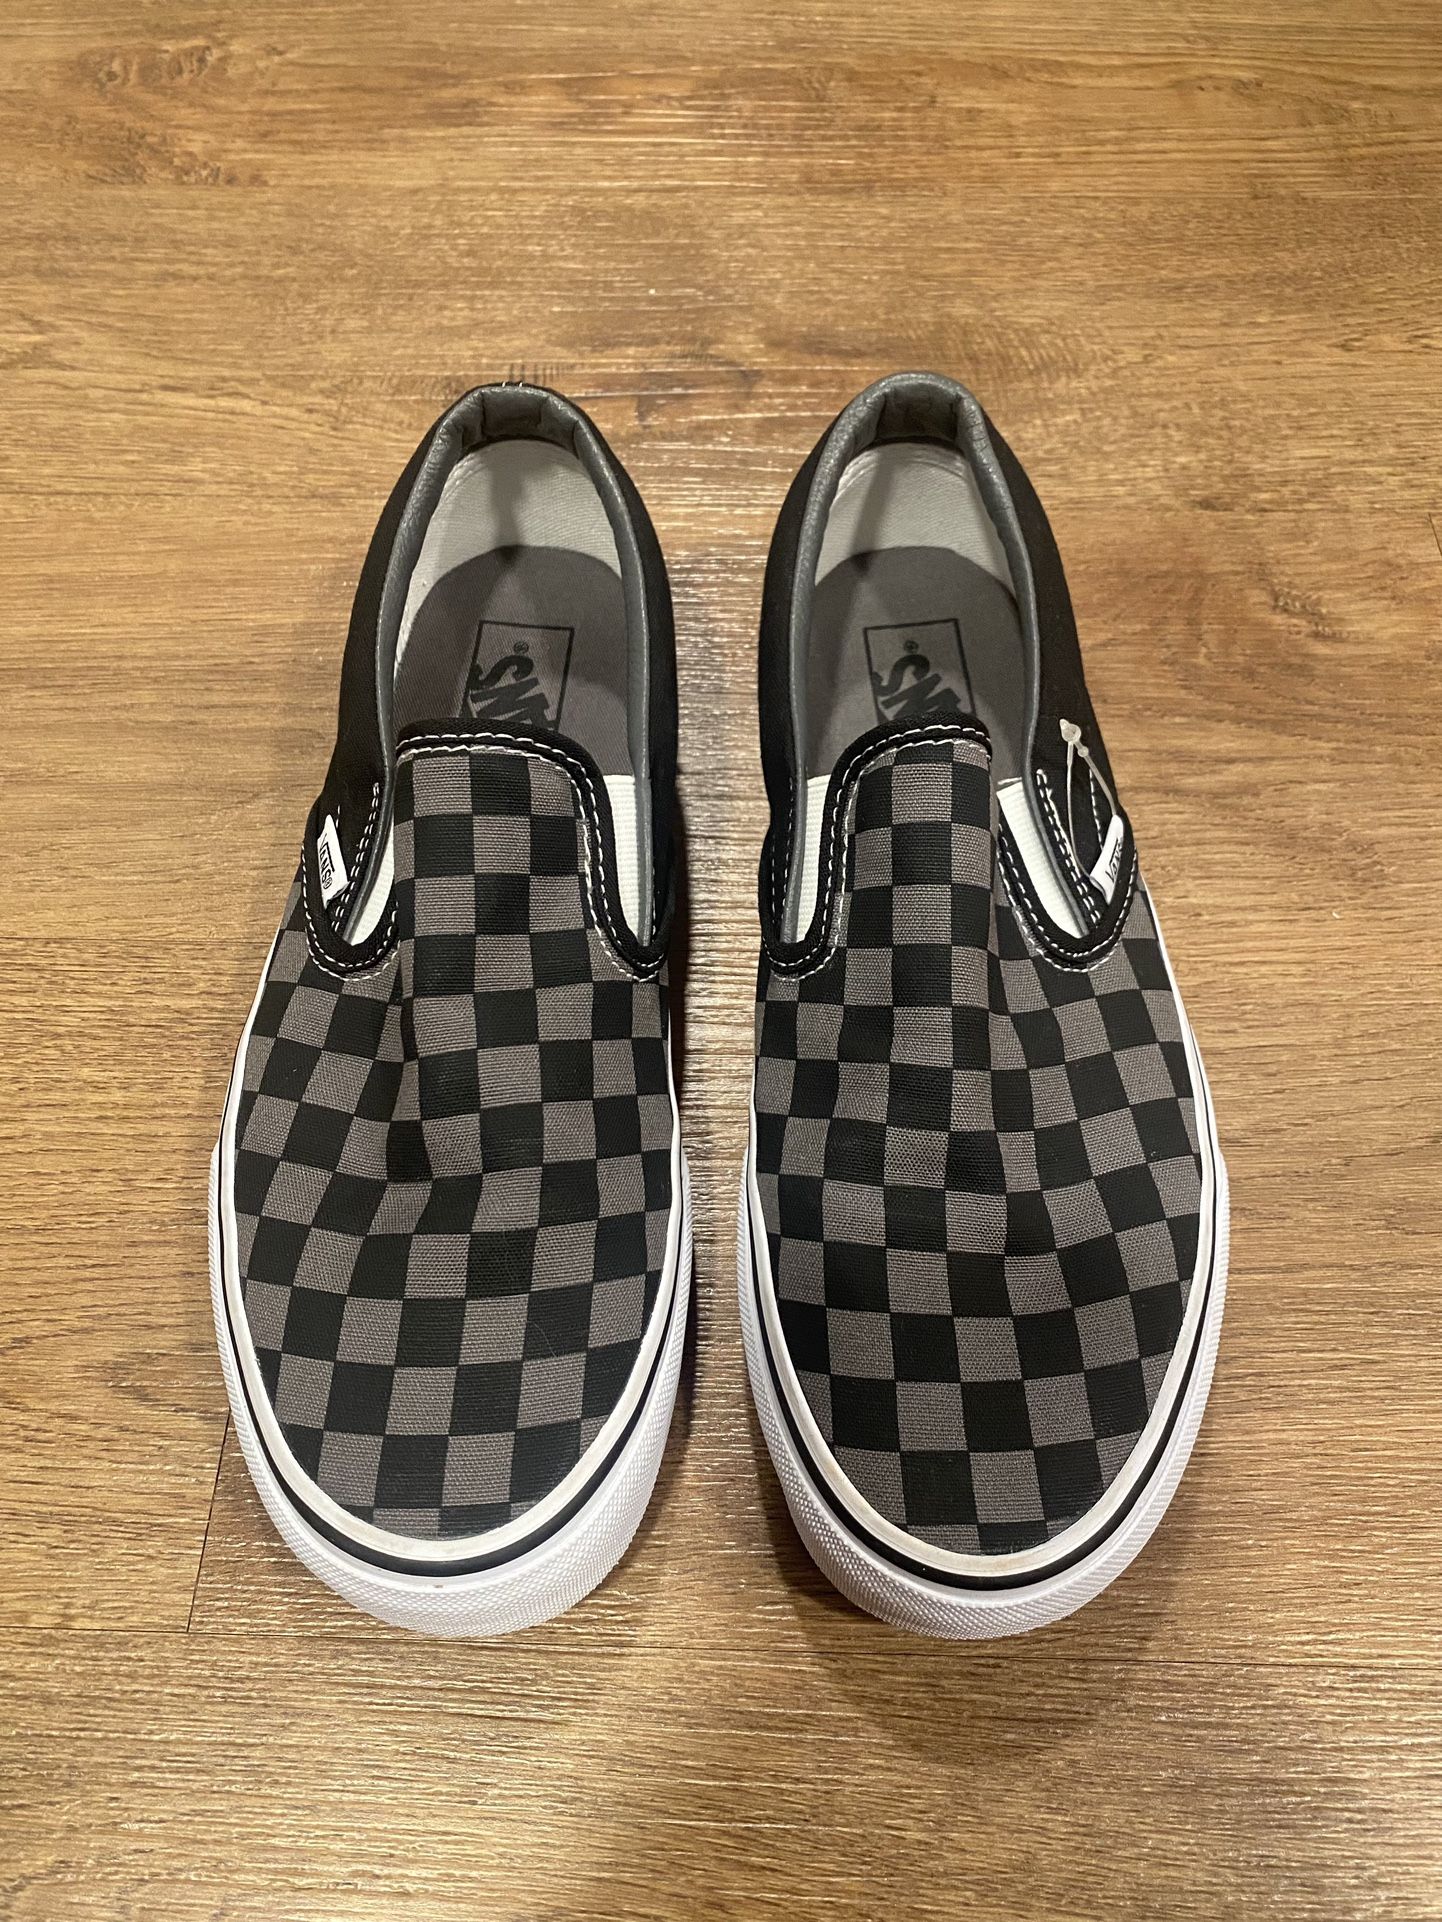 Vans Men’s Checkered Slip-On 7.5 